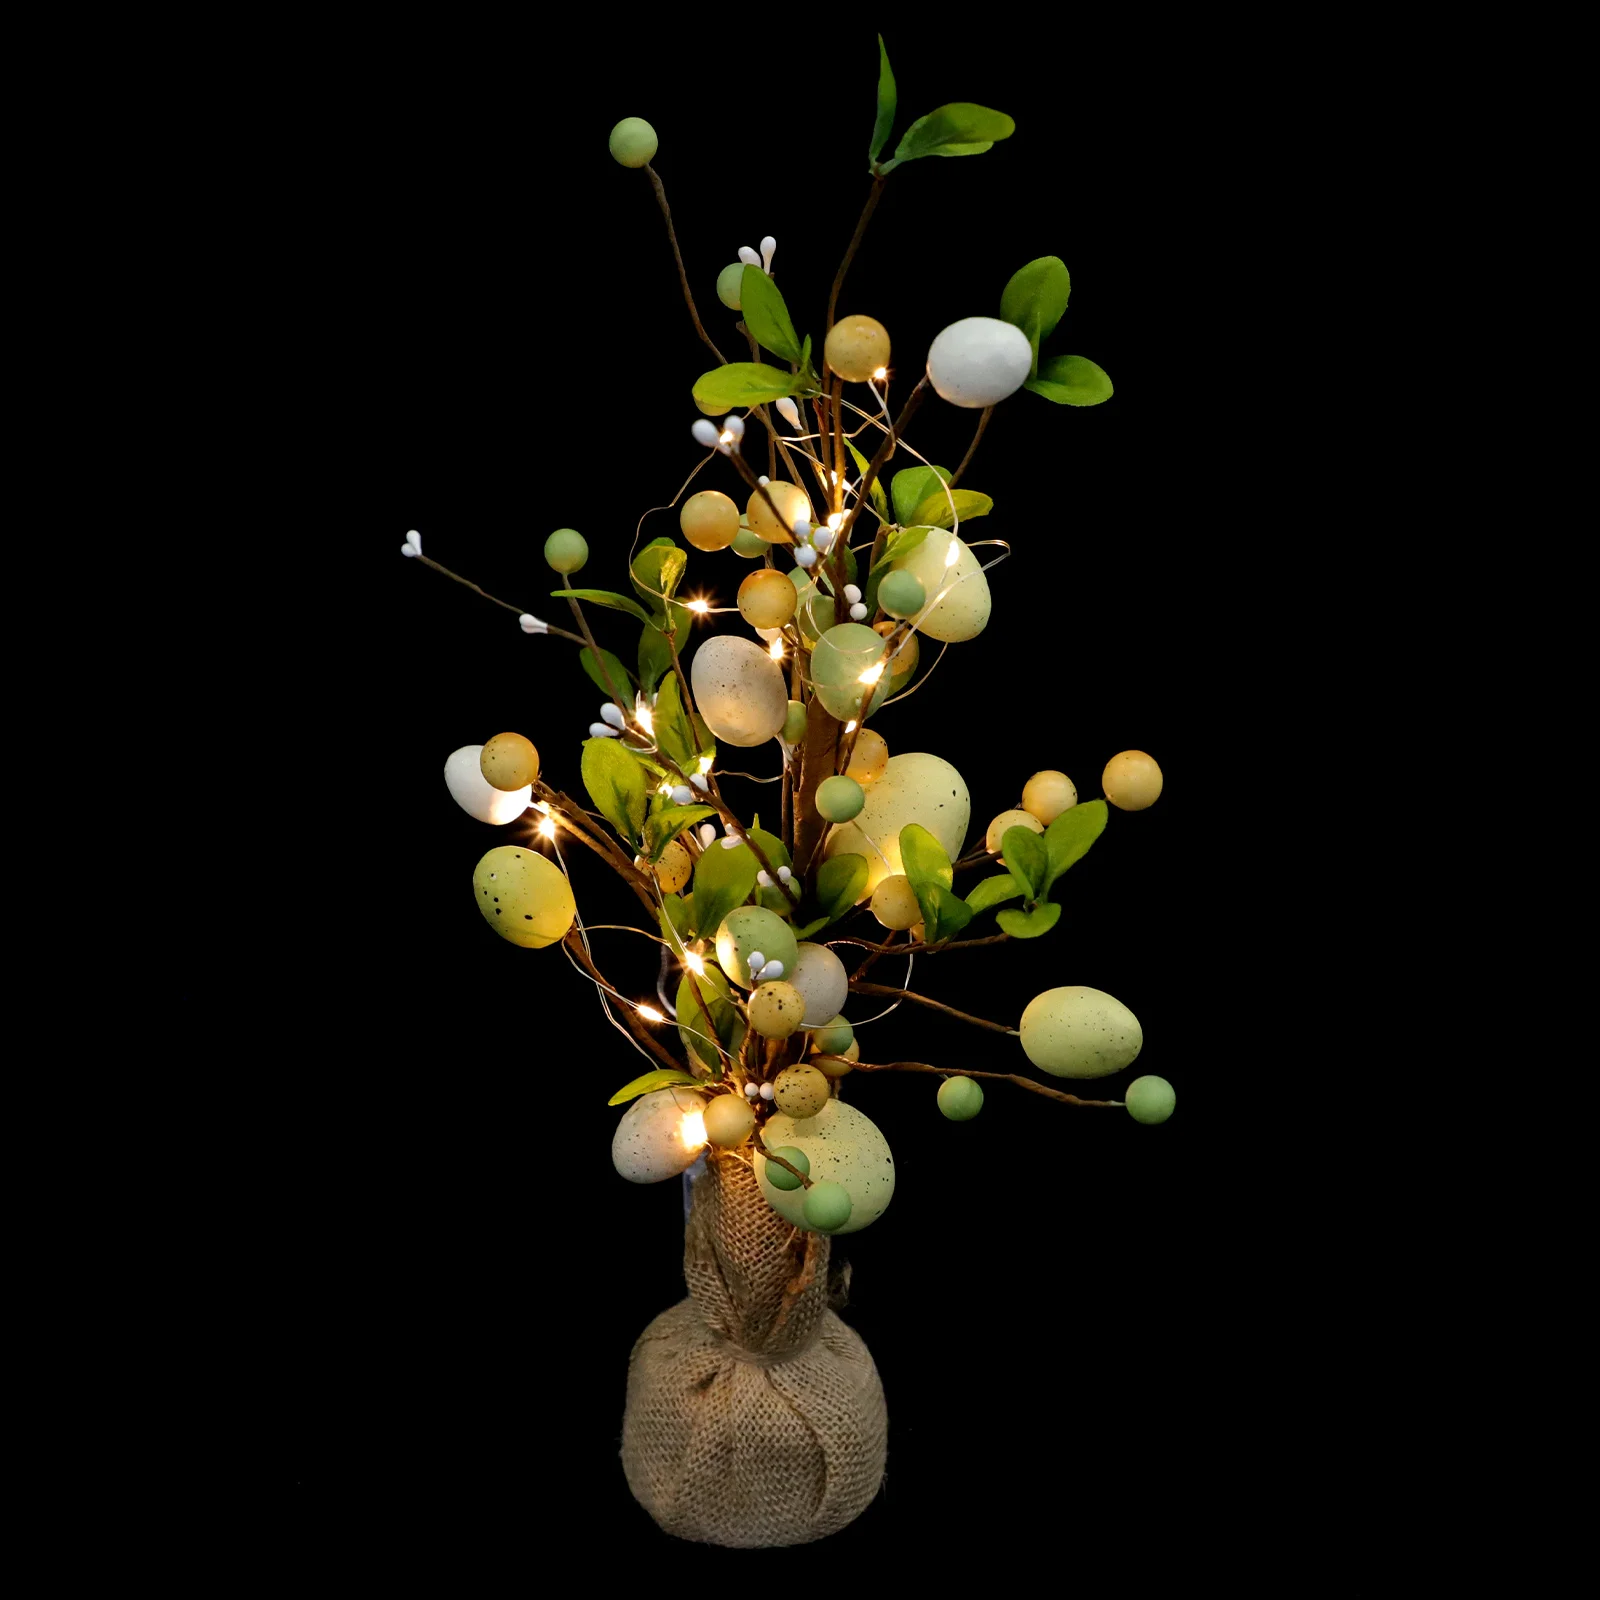 

Пасхальное яйцо, светодиодное украшение в виде ветки дерева, искусственные яйца, ветка, реалистичное украшение в виде яйца